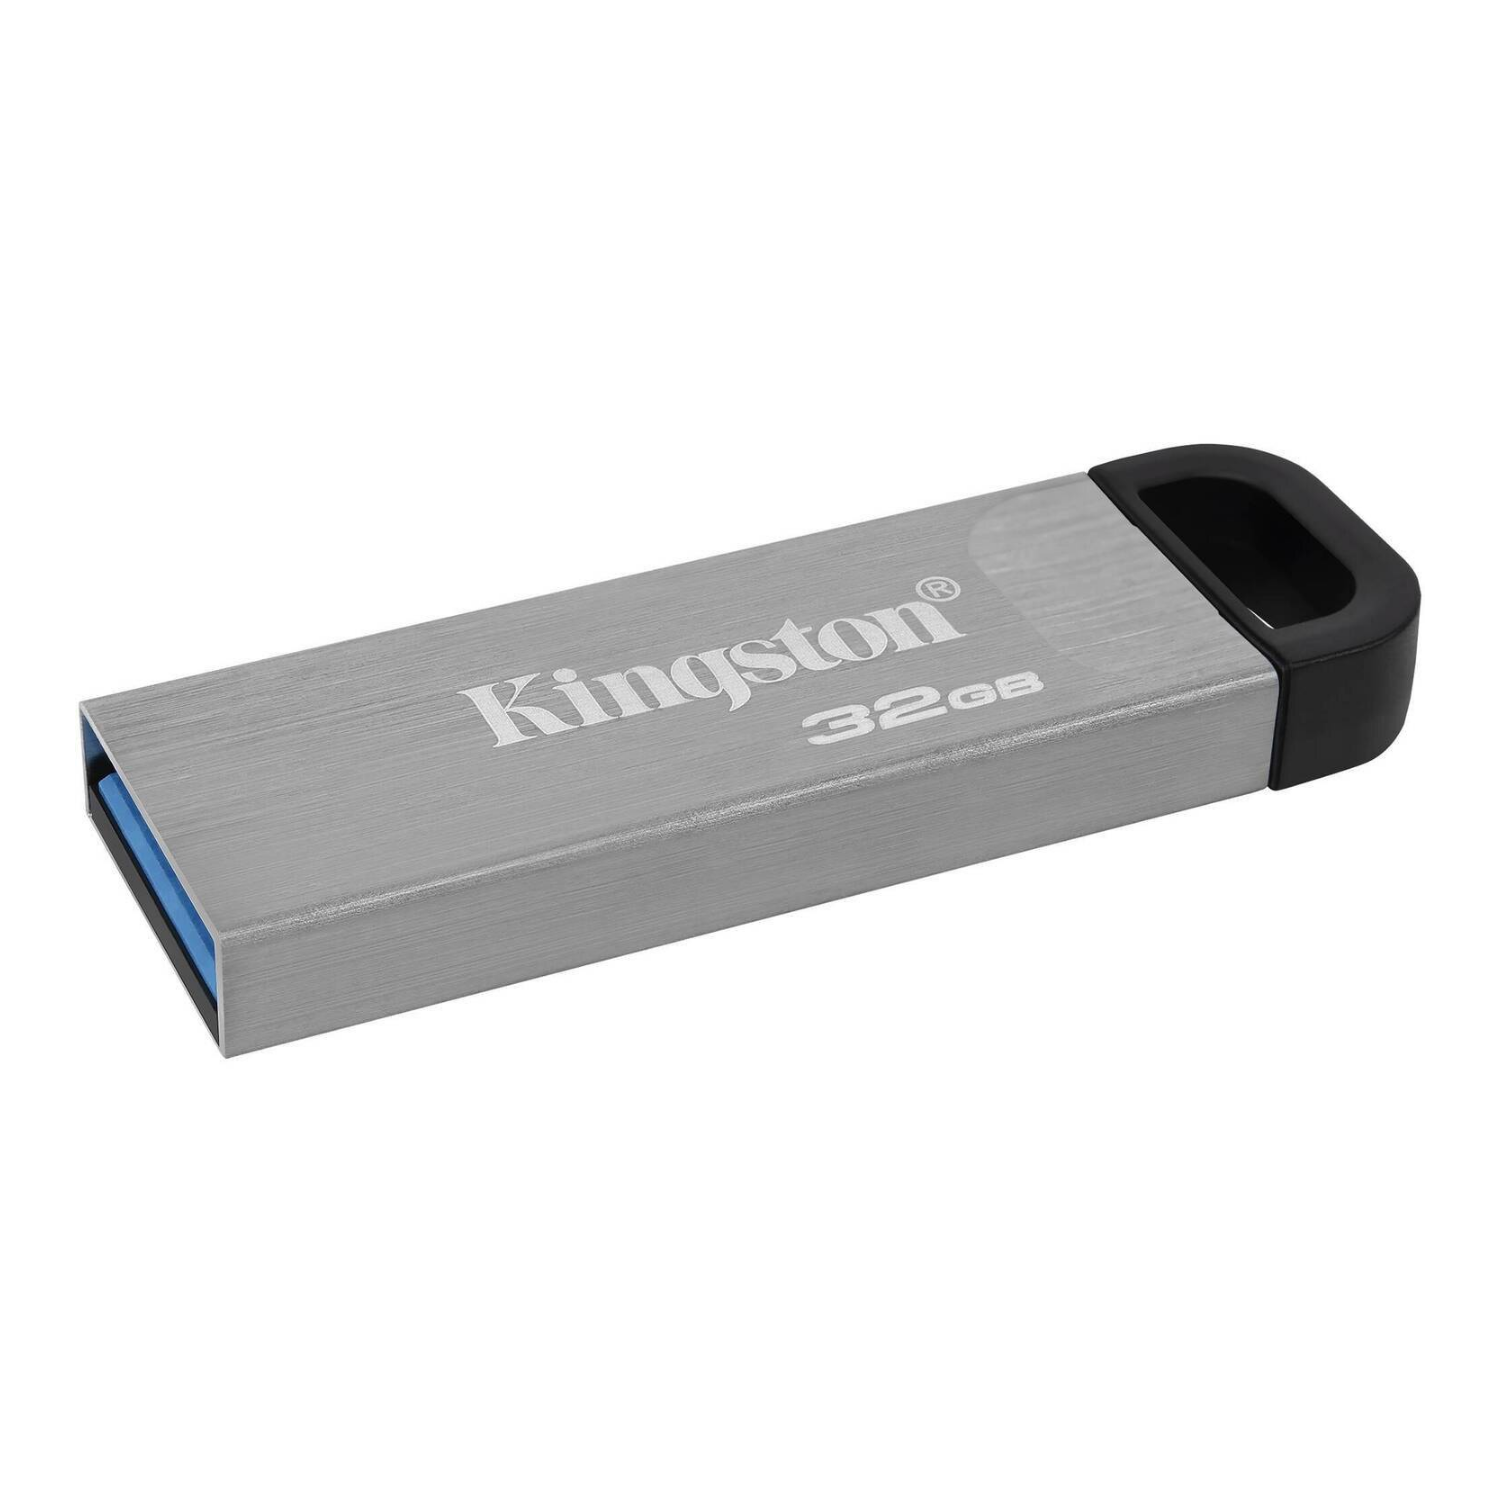 Memoria USB Kingston 32GB (DTKN/32GB)